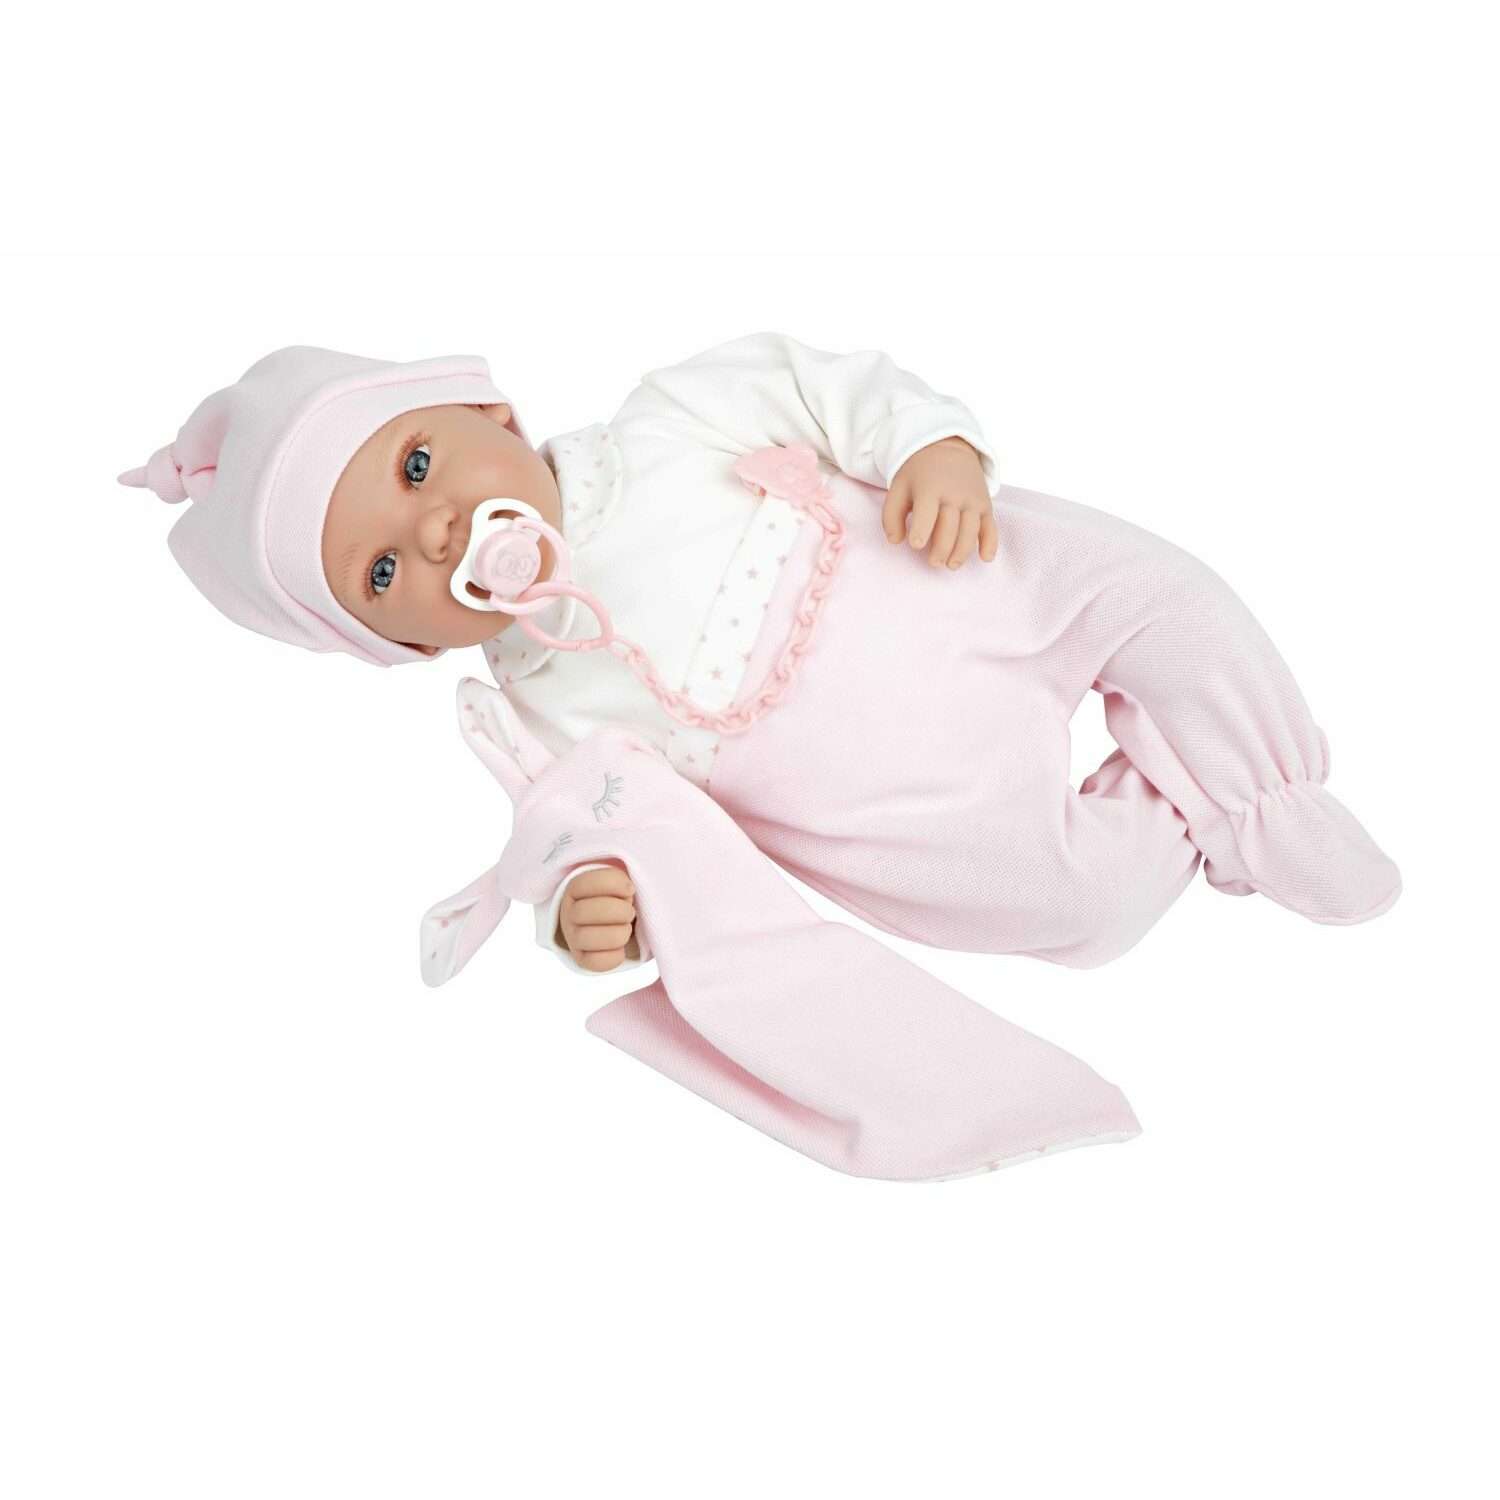 Кукла Arias Elegance iria 45 см в розовой одежде Т22065 - фото 1